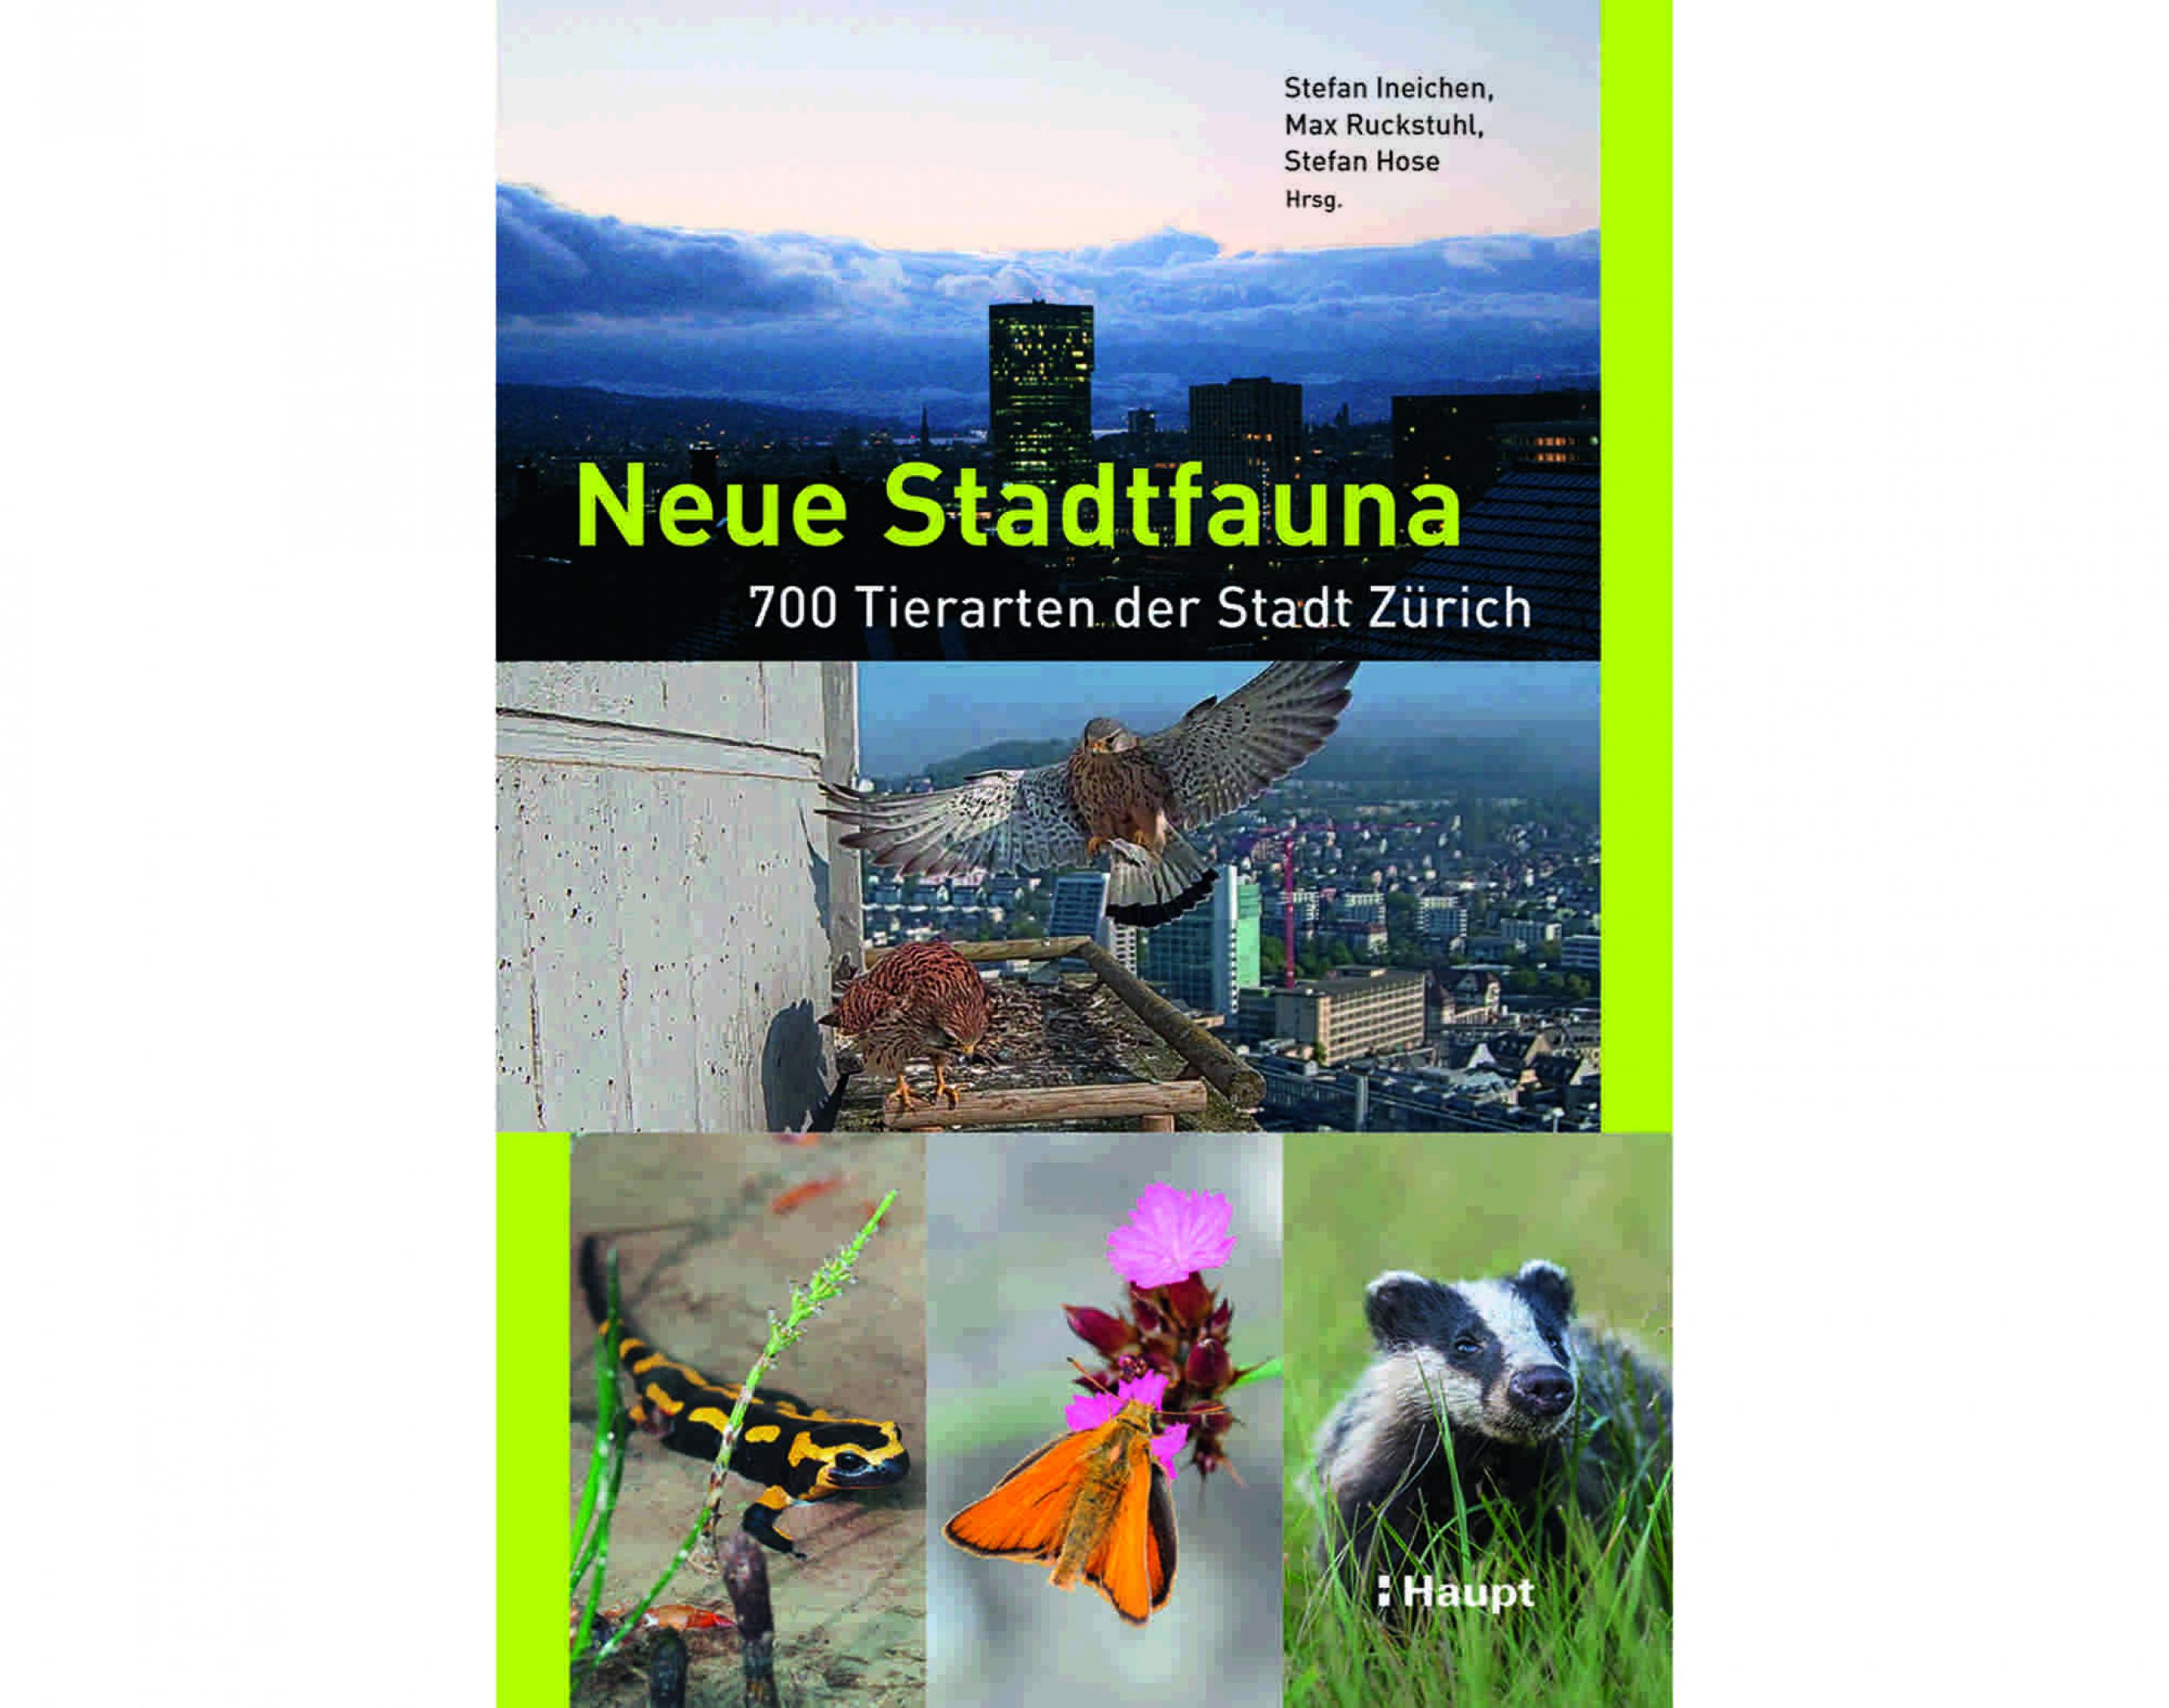 Das Titelbild des Naturführers „Neue Stadtfauna. 700 Tierarten der Stadt Zürich“ zeigt unter anderem einen Feuersalamander, einen Dachs und die Skyline der Stadt.